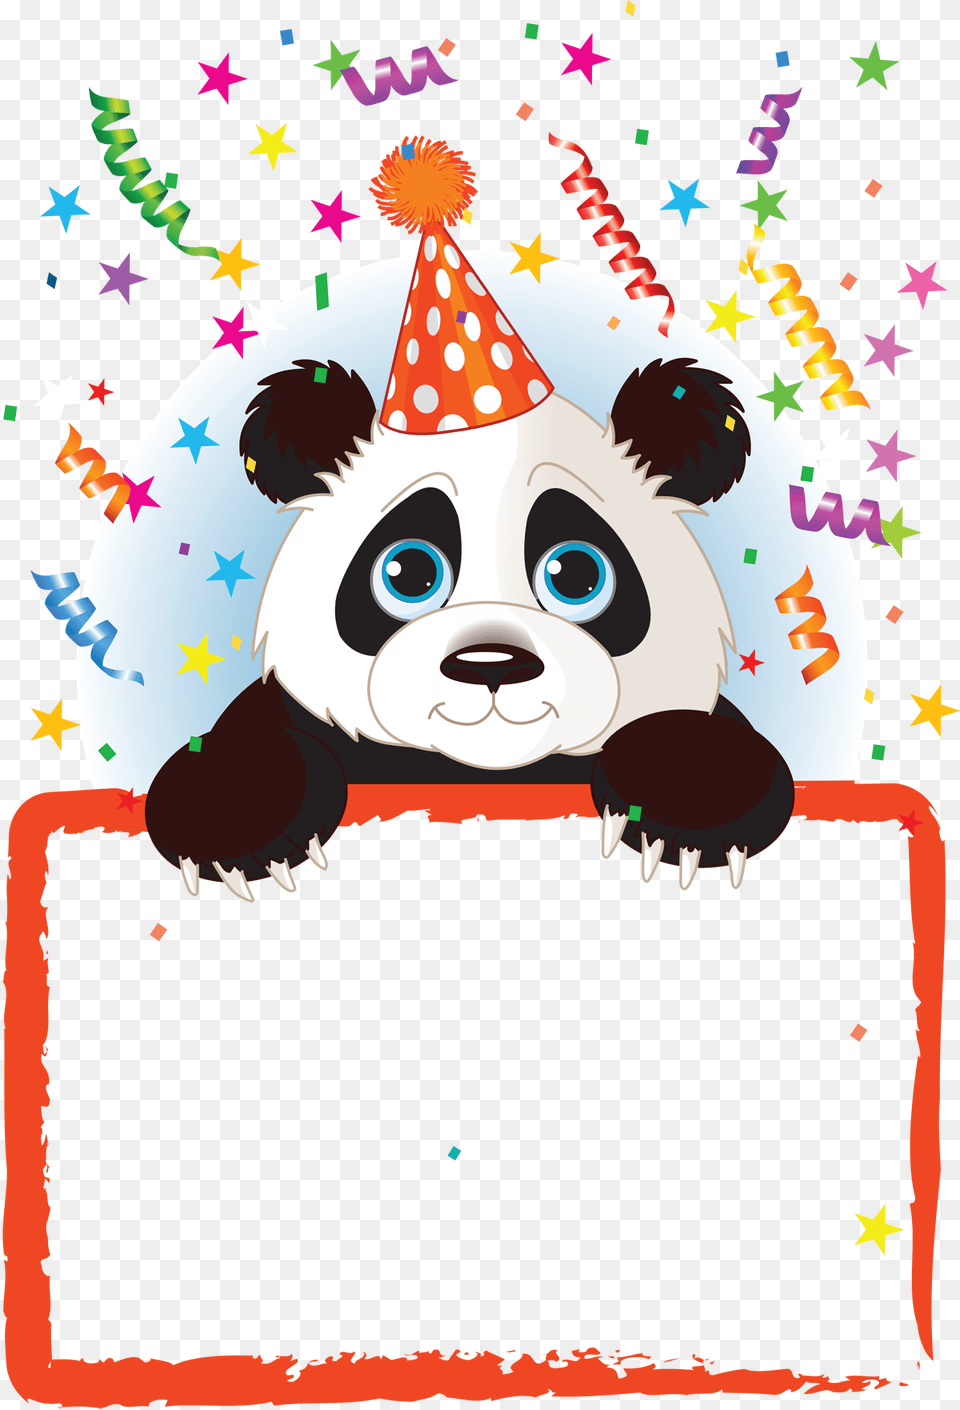 Transparente Marco Kids Feliz Con Pandas, Clothing, Hat, Party Hat Png Image